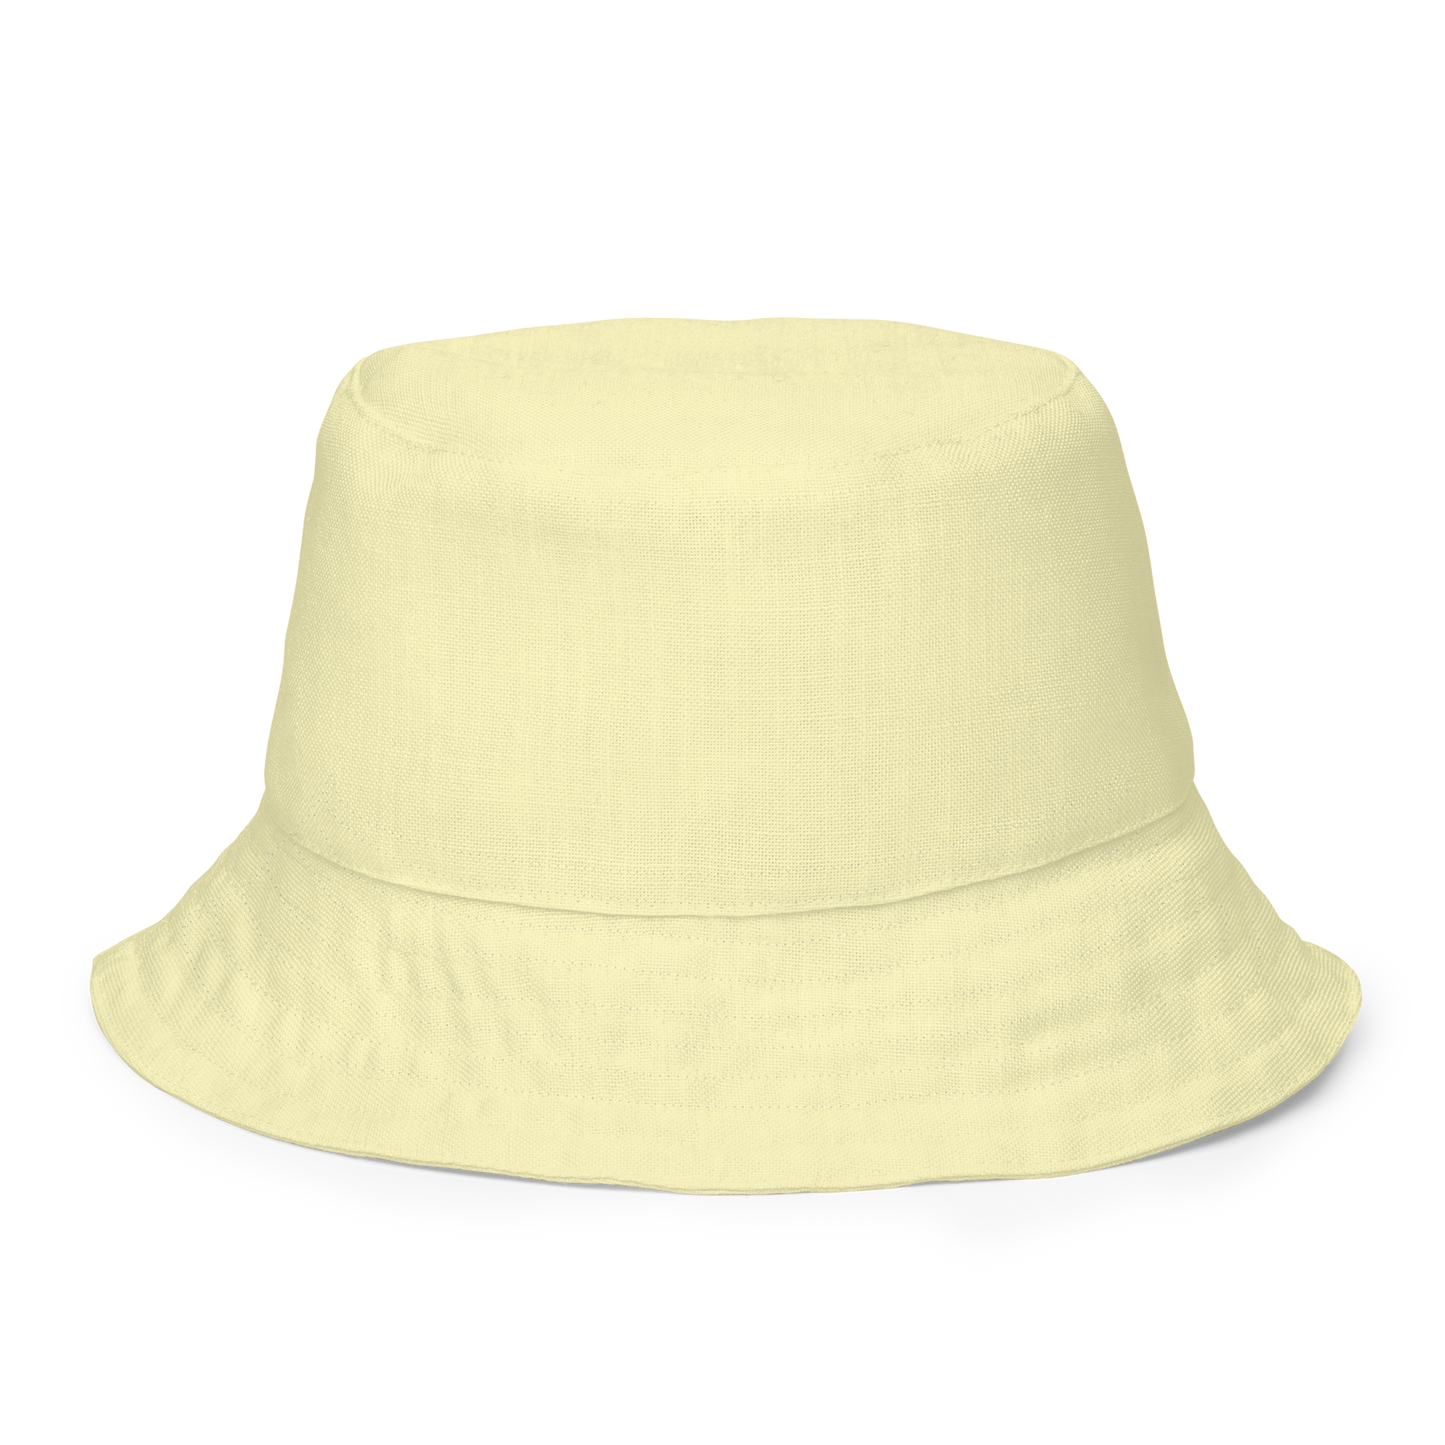 Playa Bucket Hat - Unisex, Packable Summer Travel Beach Sun Hat, for Women Men Summer Sun Beach Fishing Cap